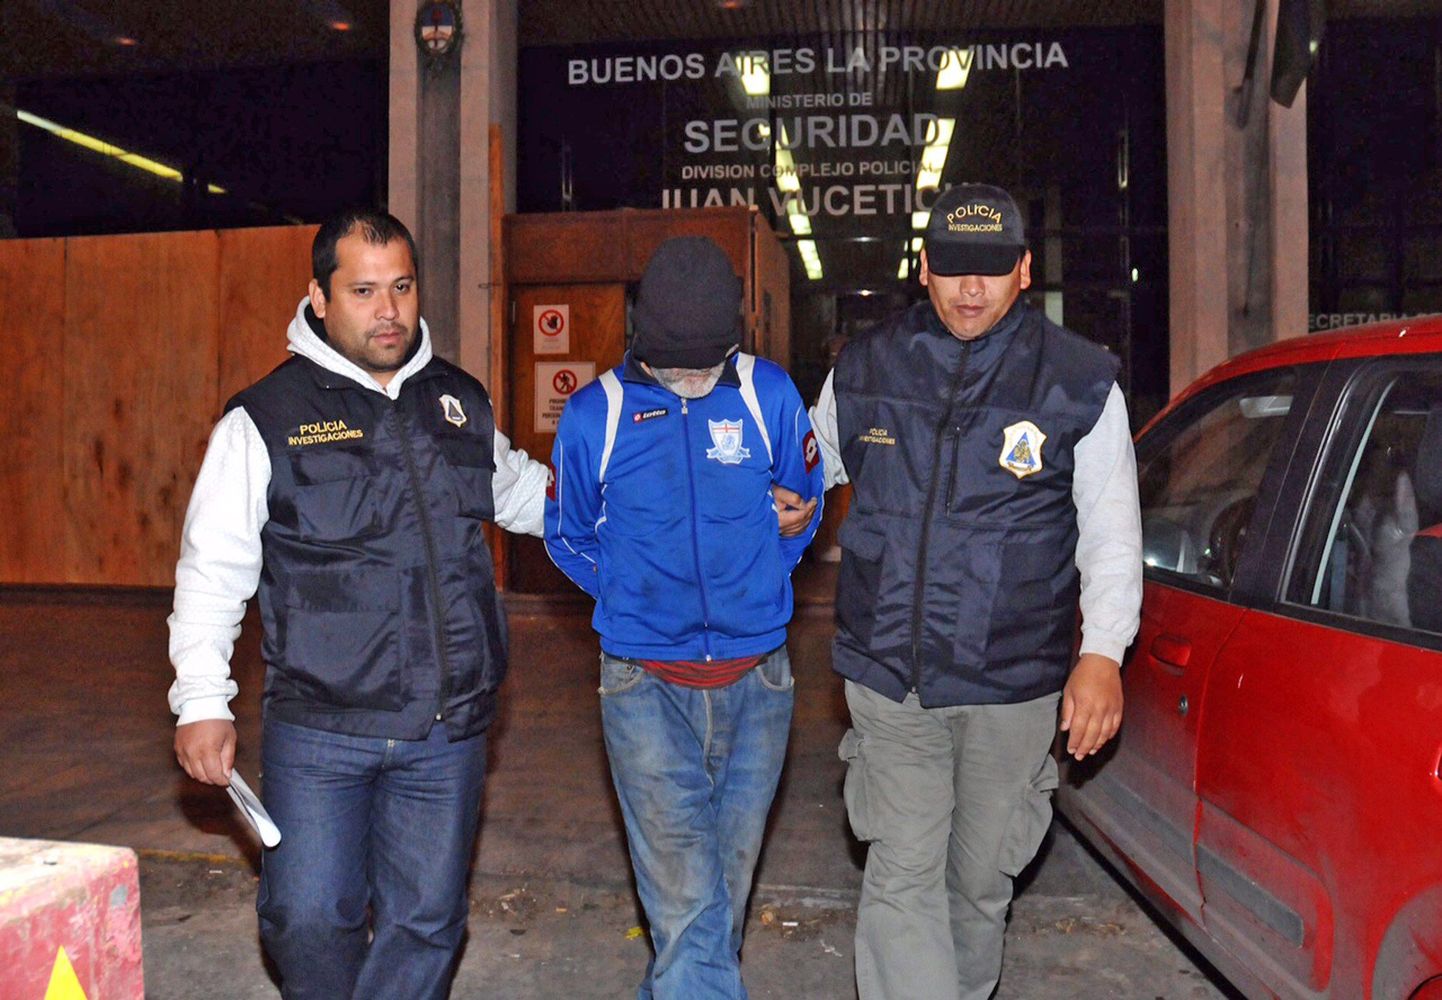 Politsei arreteeritud Eduardo Oviedoga